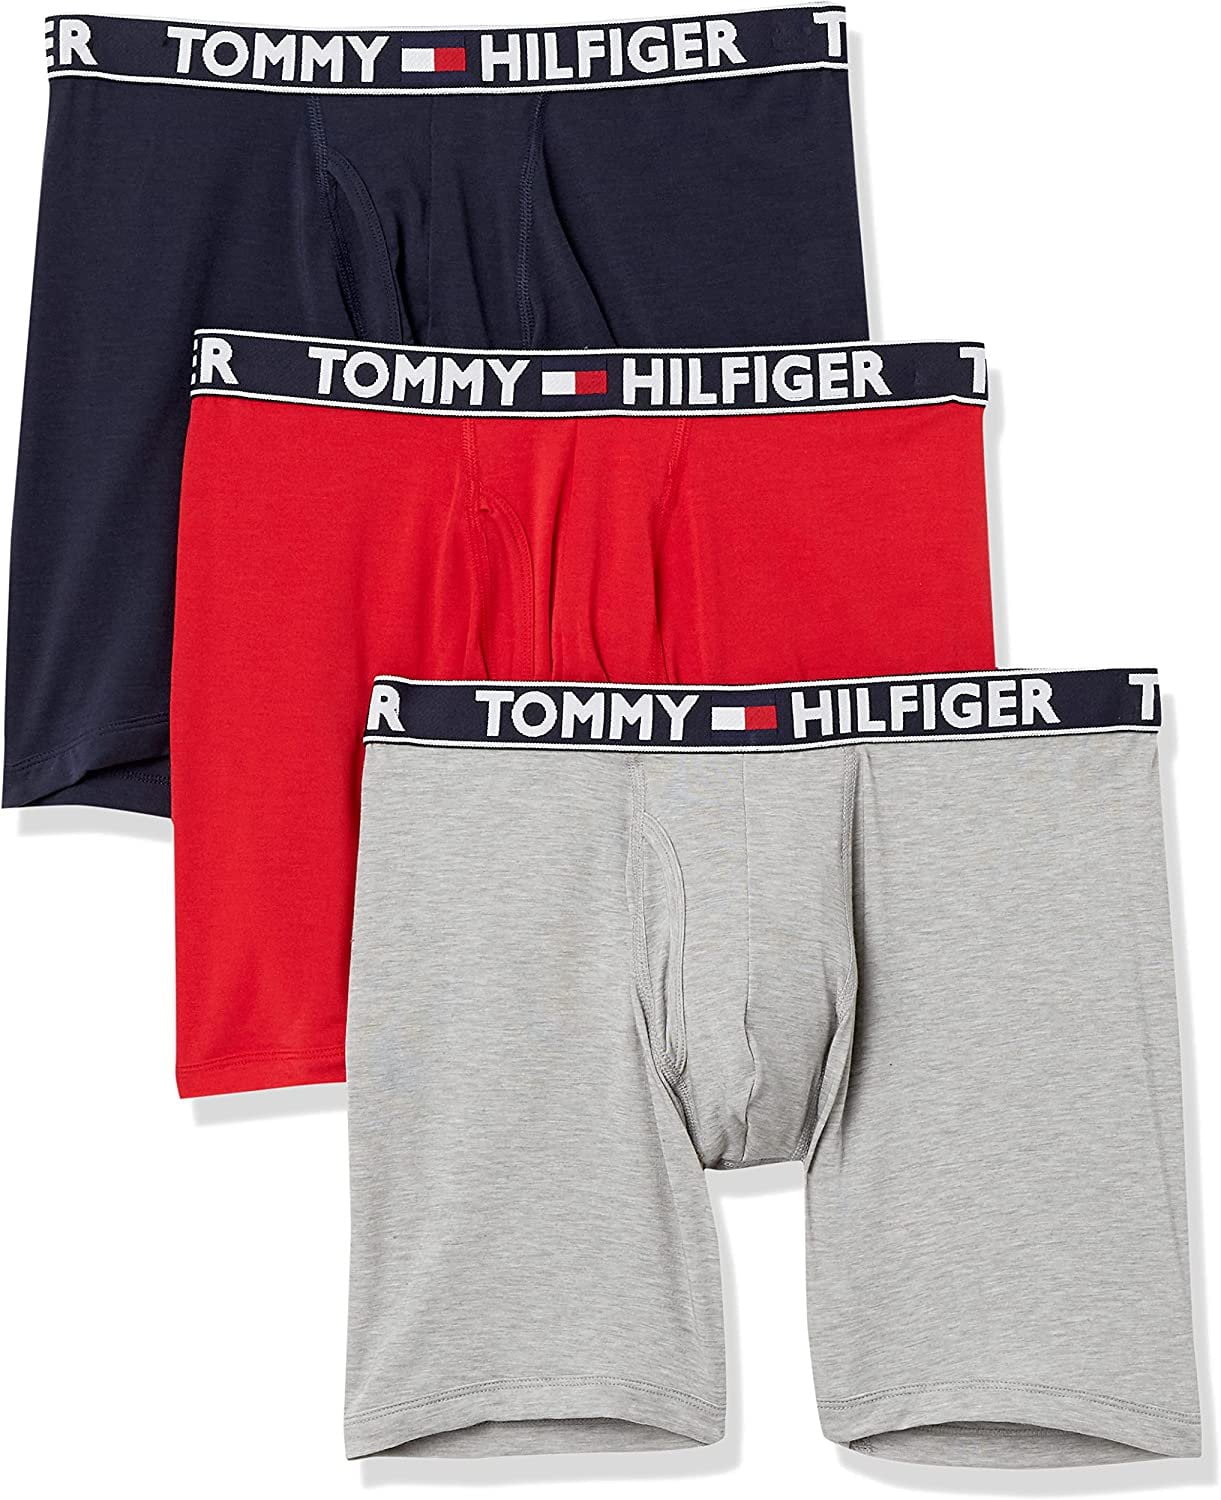 Tommy Hilfiger Men Comfort 2.0 3 Pack Trunks